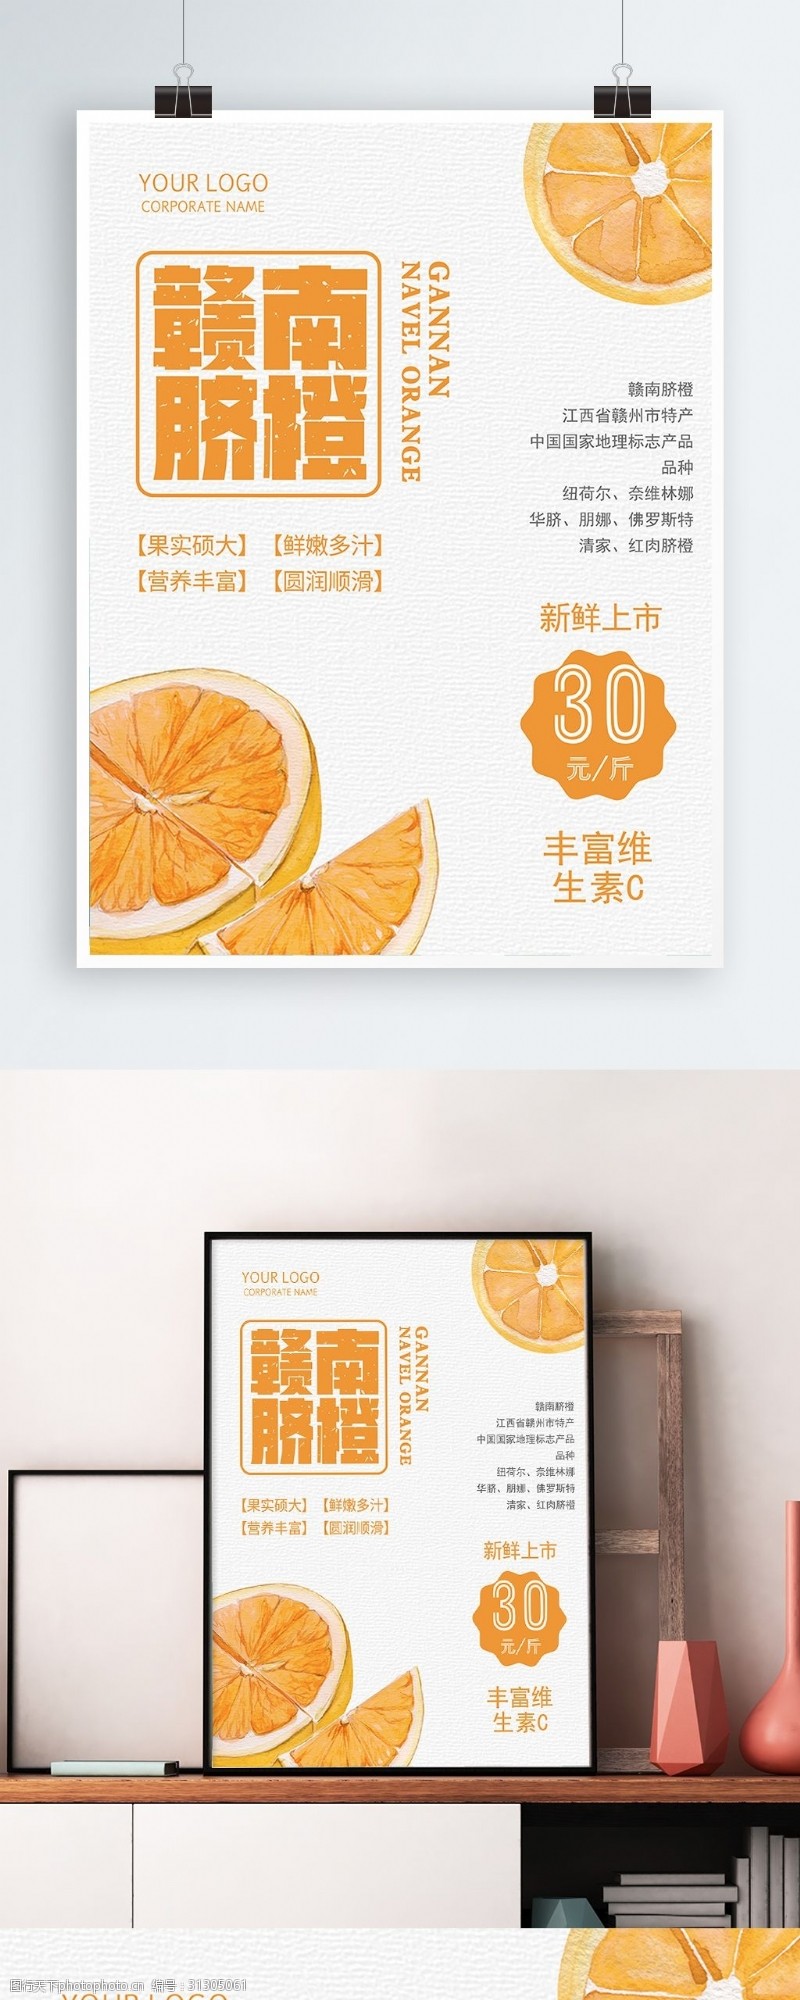 橘子原创水果店手绘水果橙子海报模版下载